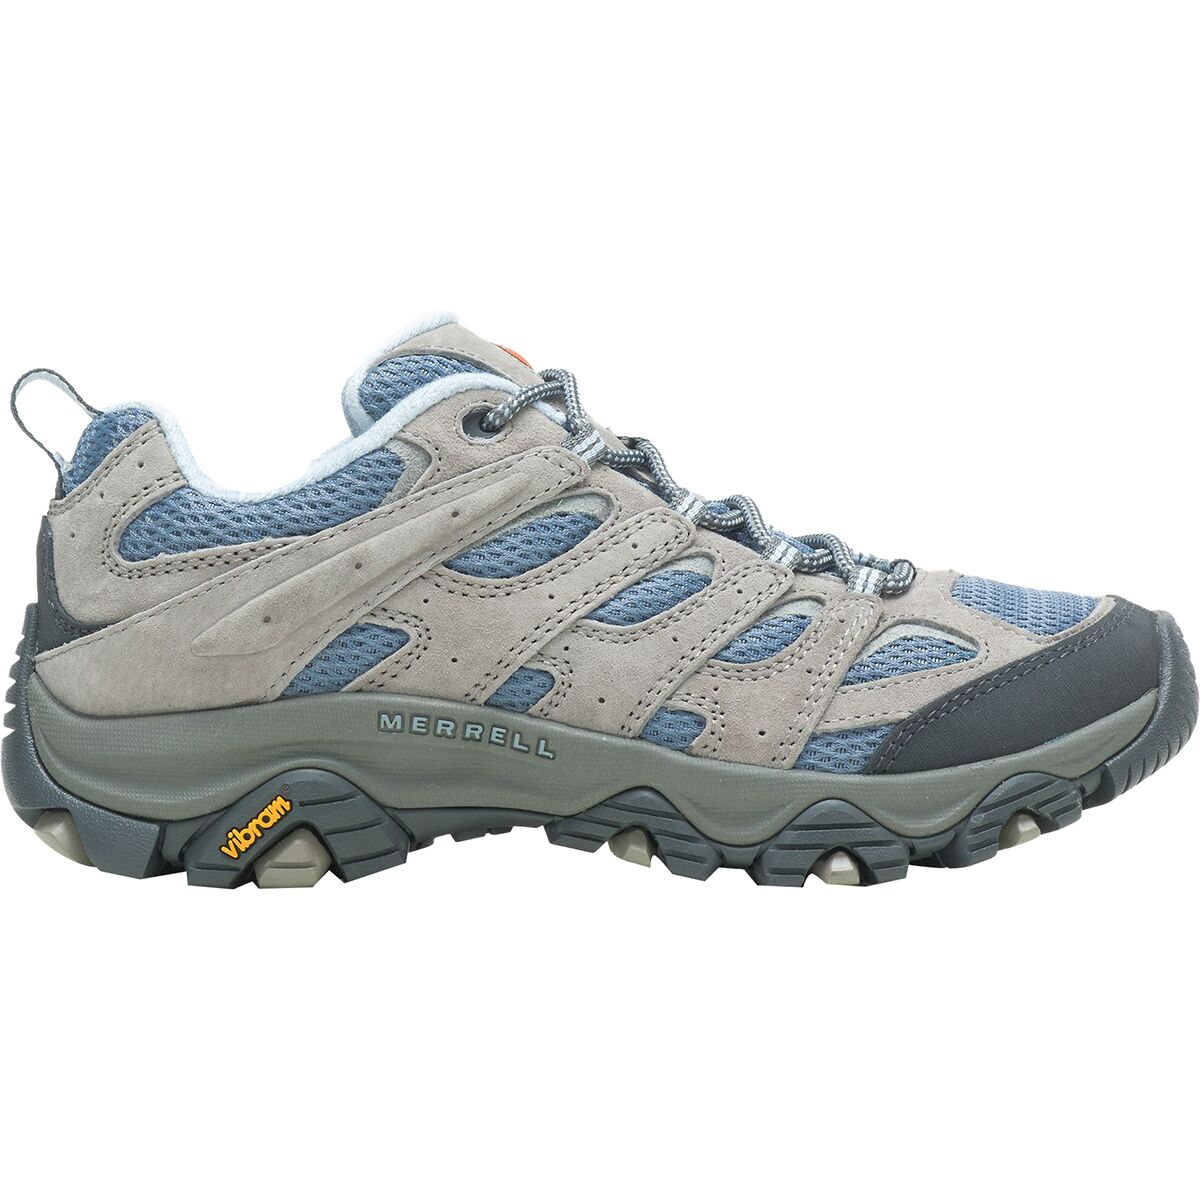 Merrell Moab Hiking Shoe - Footwear